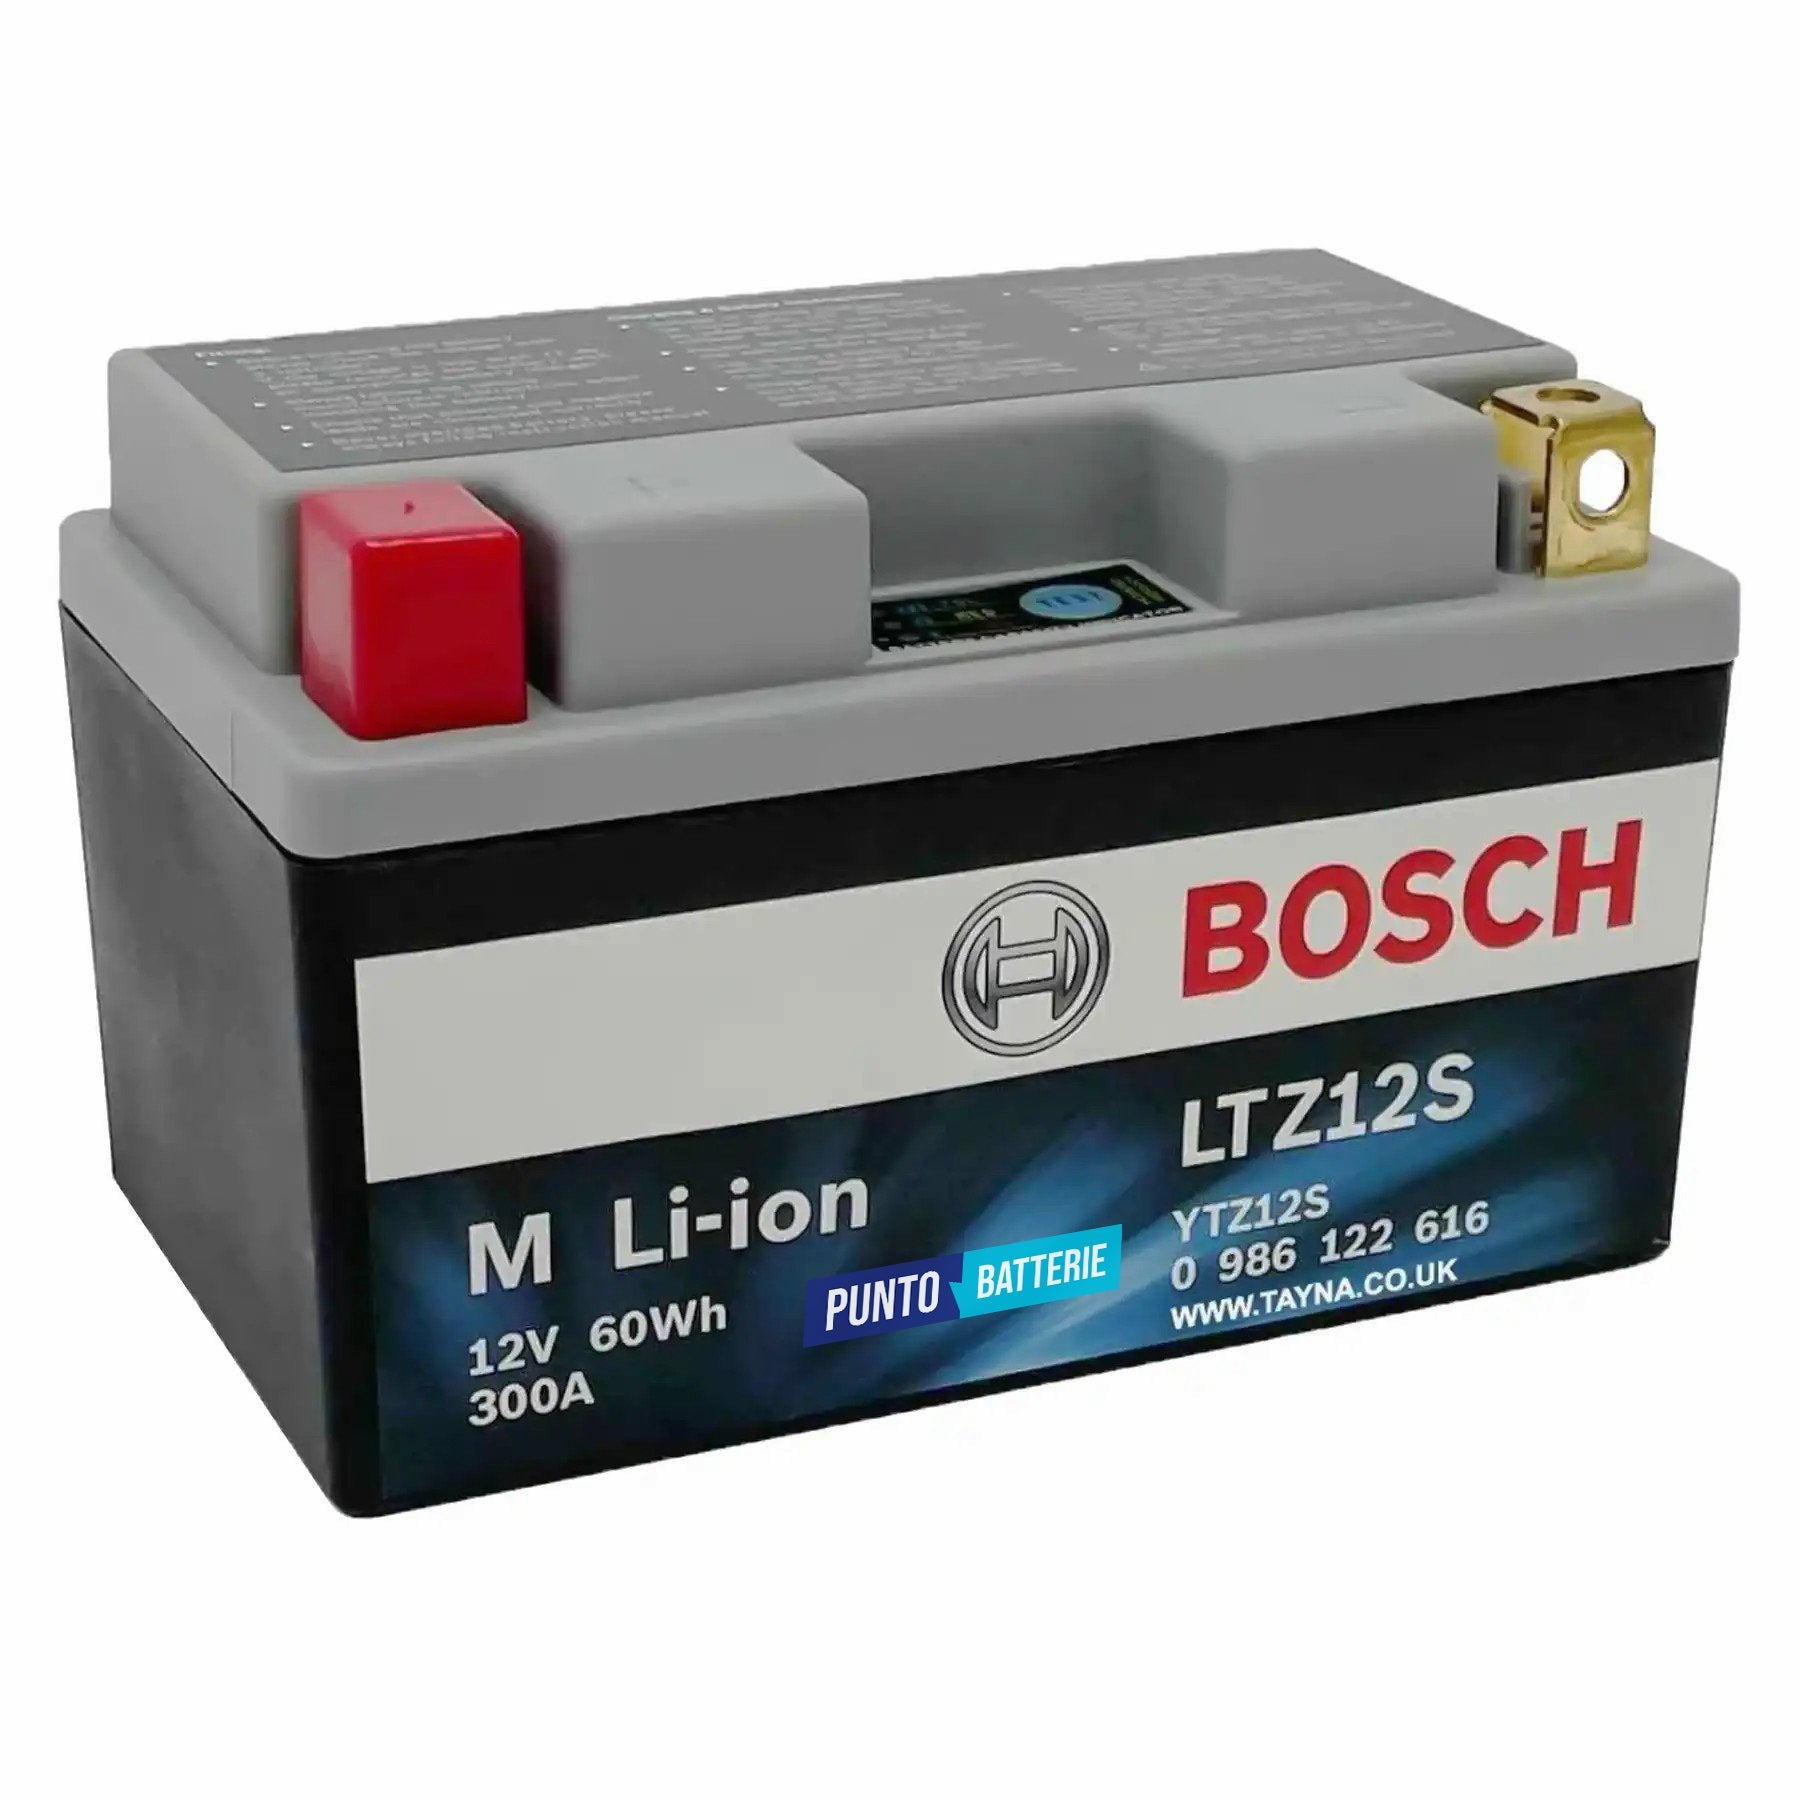 Batteria originale Bosch M Li-ion LTZ12S, dimensioni 150 x 87 x 164, polo positivo a sinistra, 12 volt, 5 amperora, 300 ampere. Batteria per moto, scooter e powersport.